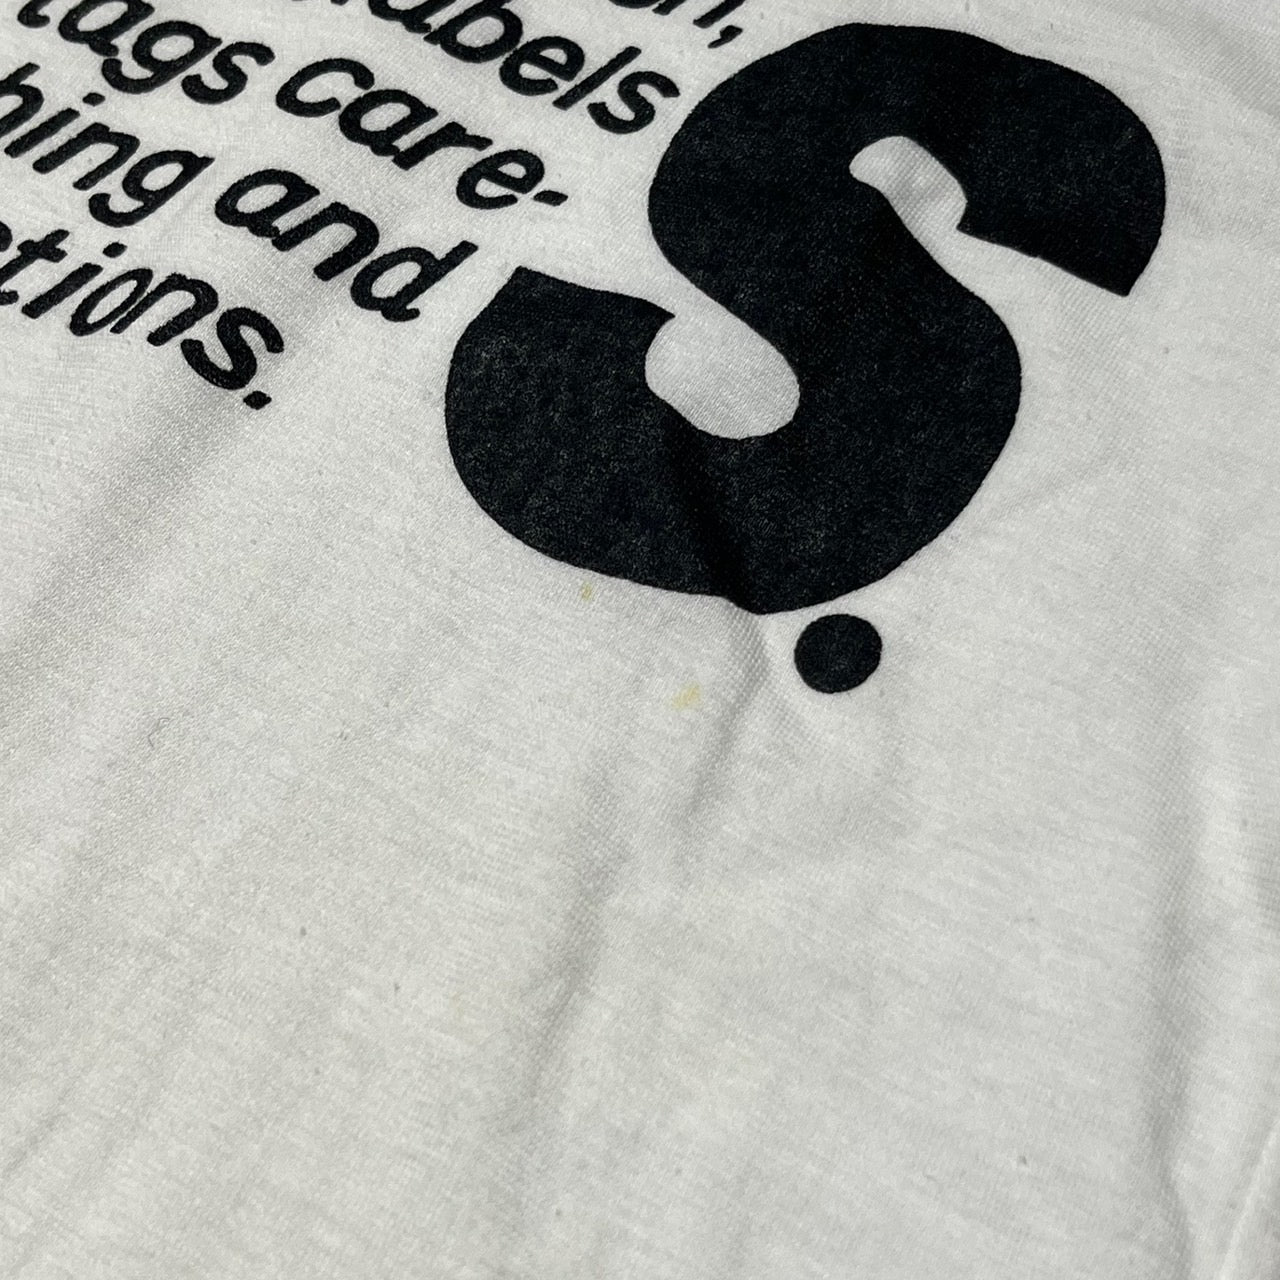 i.s. ISSEY MIYAKE(アイエス イッセイミヤケ) 90's "IS"logo print T-shirt/ロゴTシャツ IS10-JK004 M ホワイト